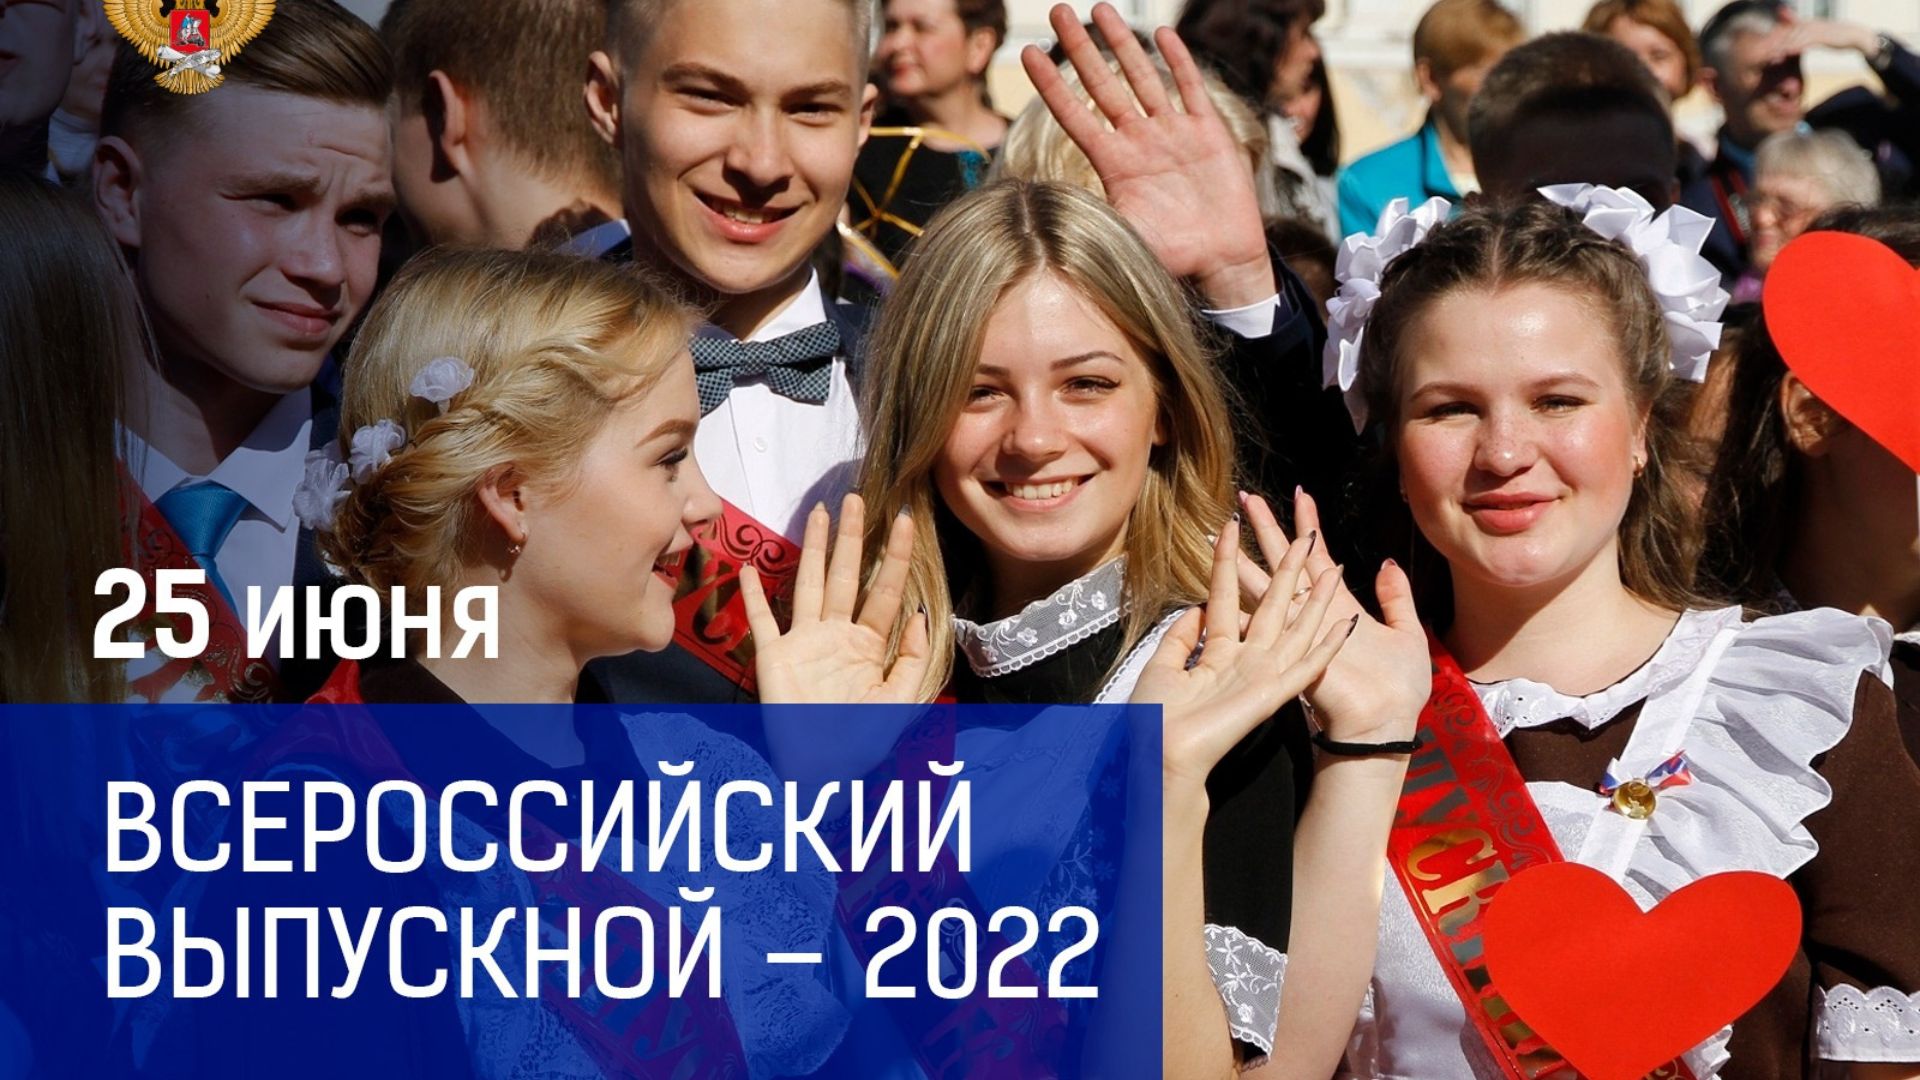 Министр просвещения Сергей Кравцов поздравил выпускников российских школ